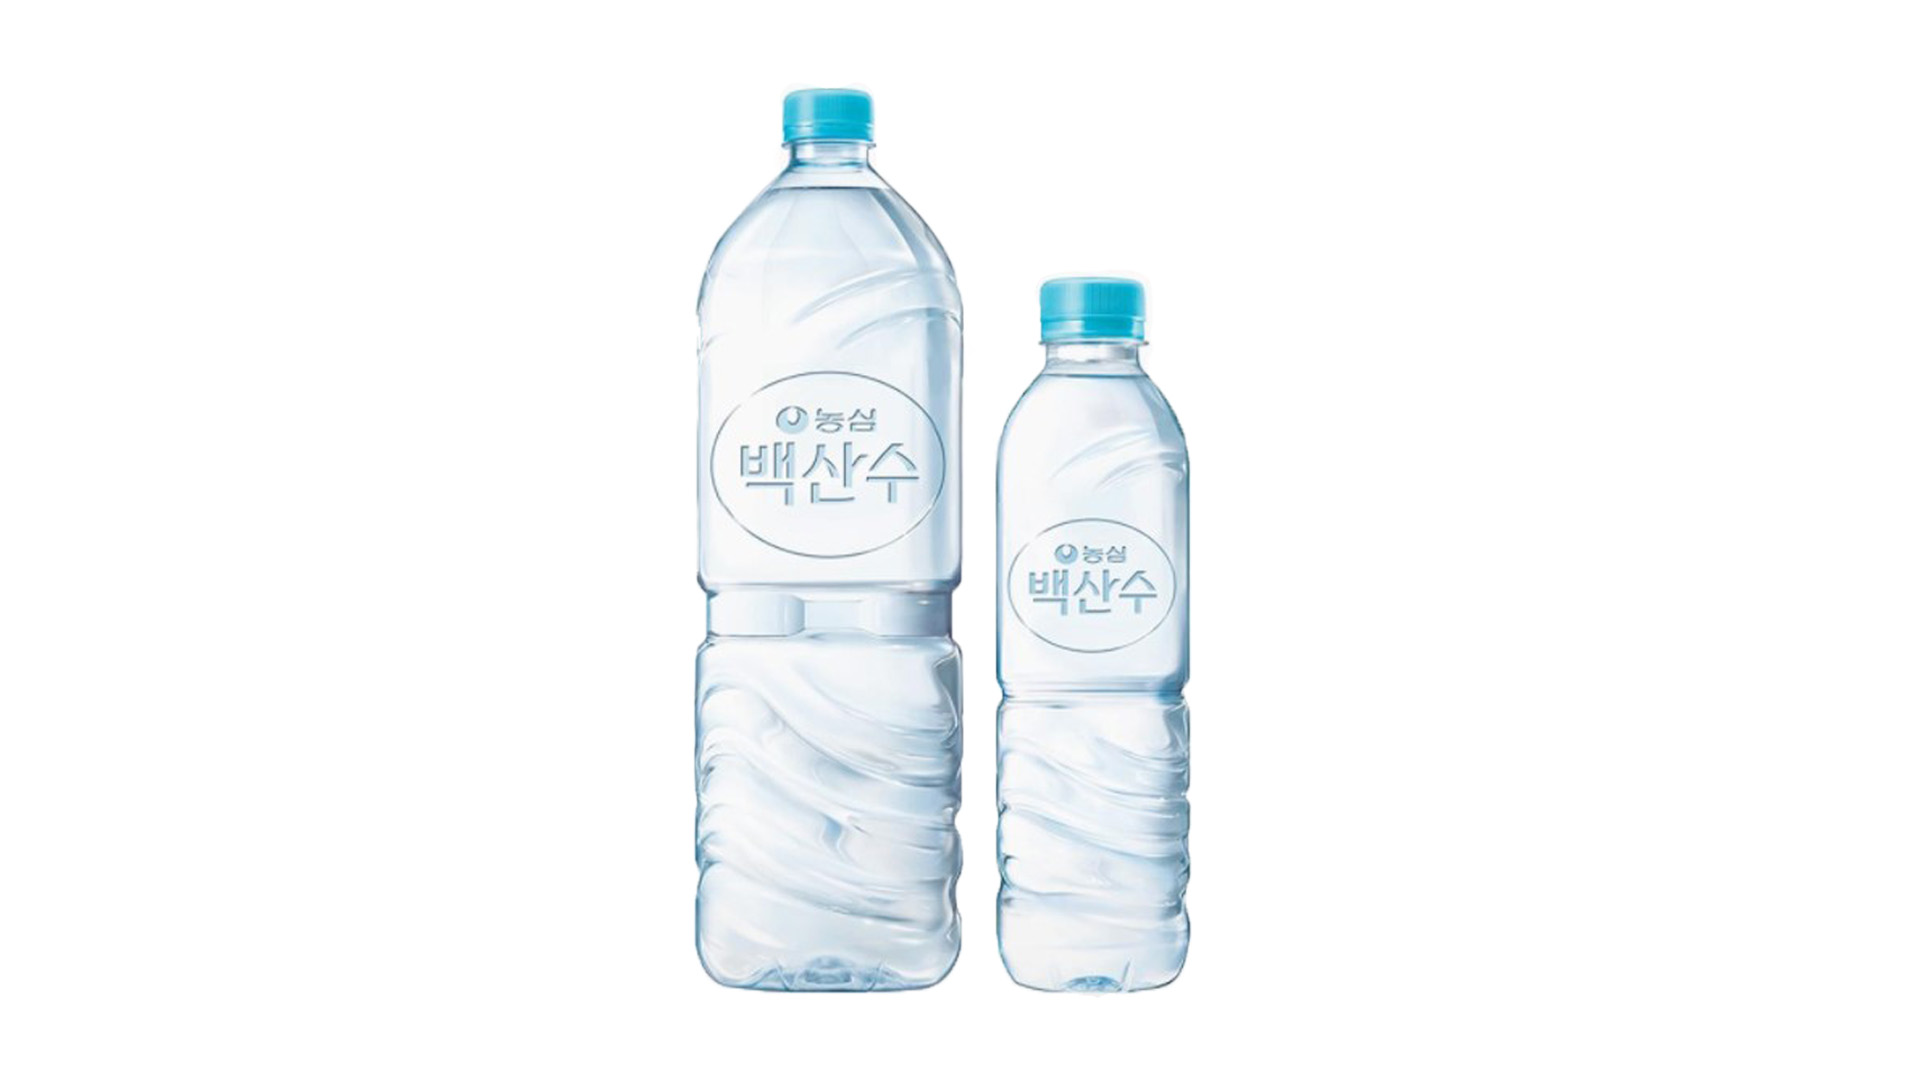 เกาหลีเริ่มตัดฉลากน้ำดื่มออก หันมาพิมพ์สลักบนขวดแทน เพื่อลดปริมาณพลาสติก